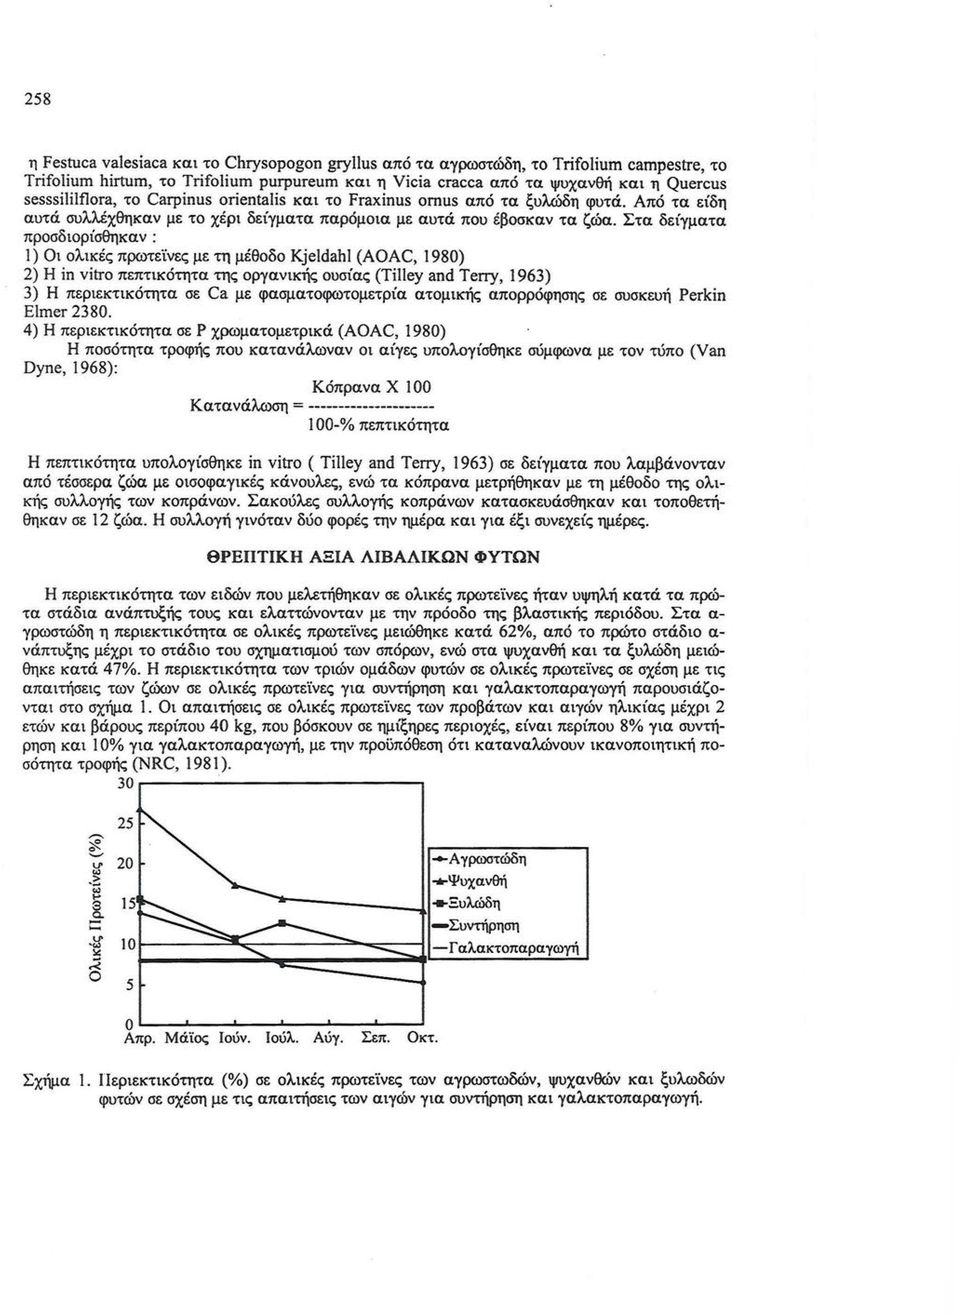 Στα δείγματα πρσδιρίσθηκαν : Ι) Οι λικές πρωτεϊνες με τη μέθδ Kjeidahi (AOAC, 1980) 2) Η in νitro πεπτικότητα της ργανικής υσίας (τi!